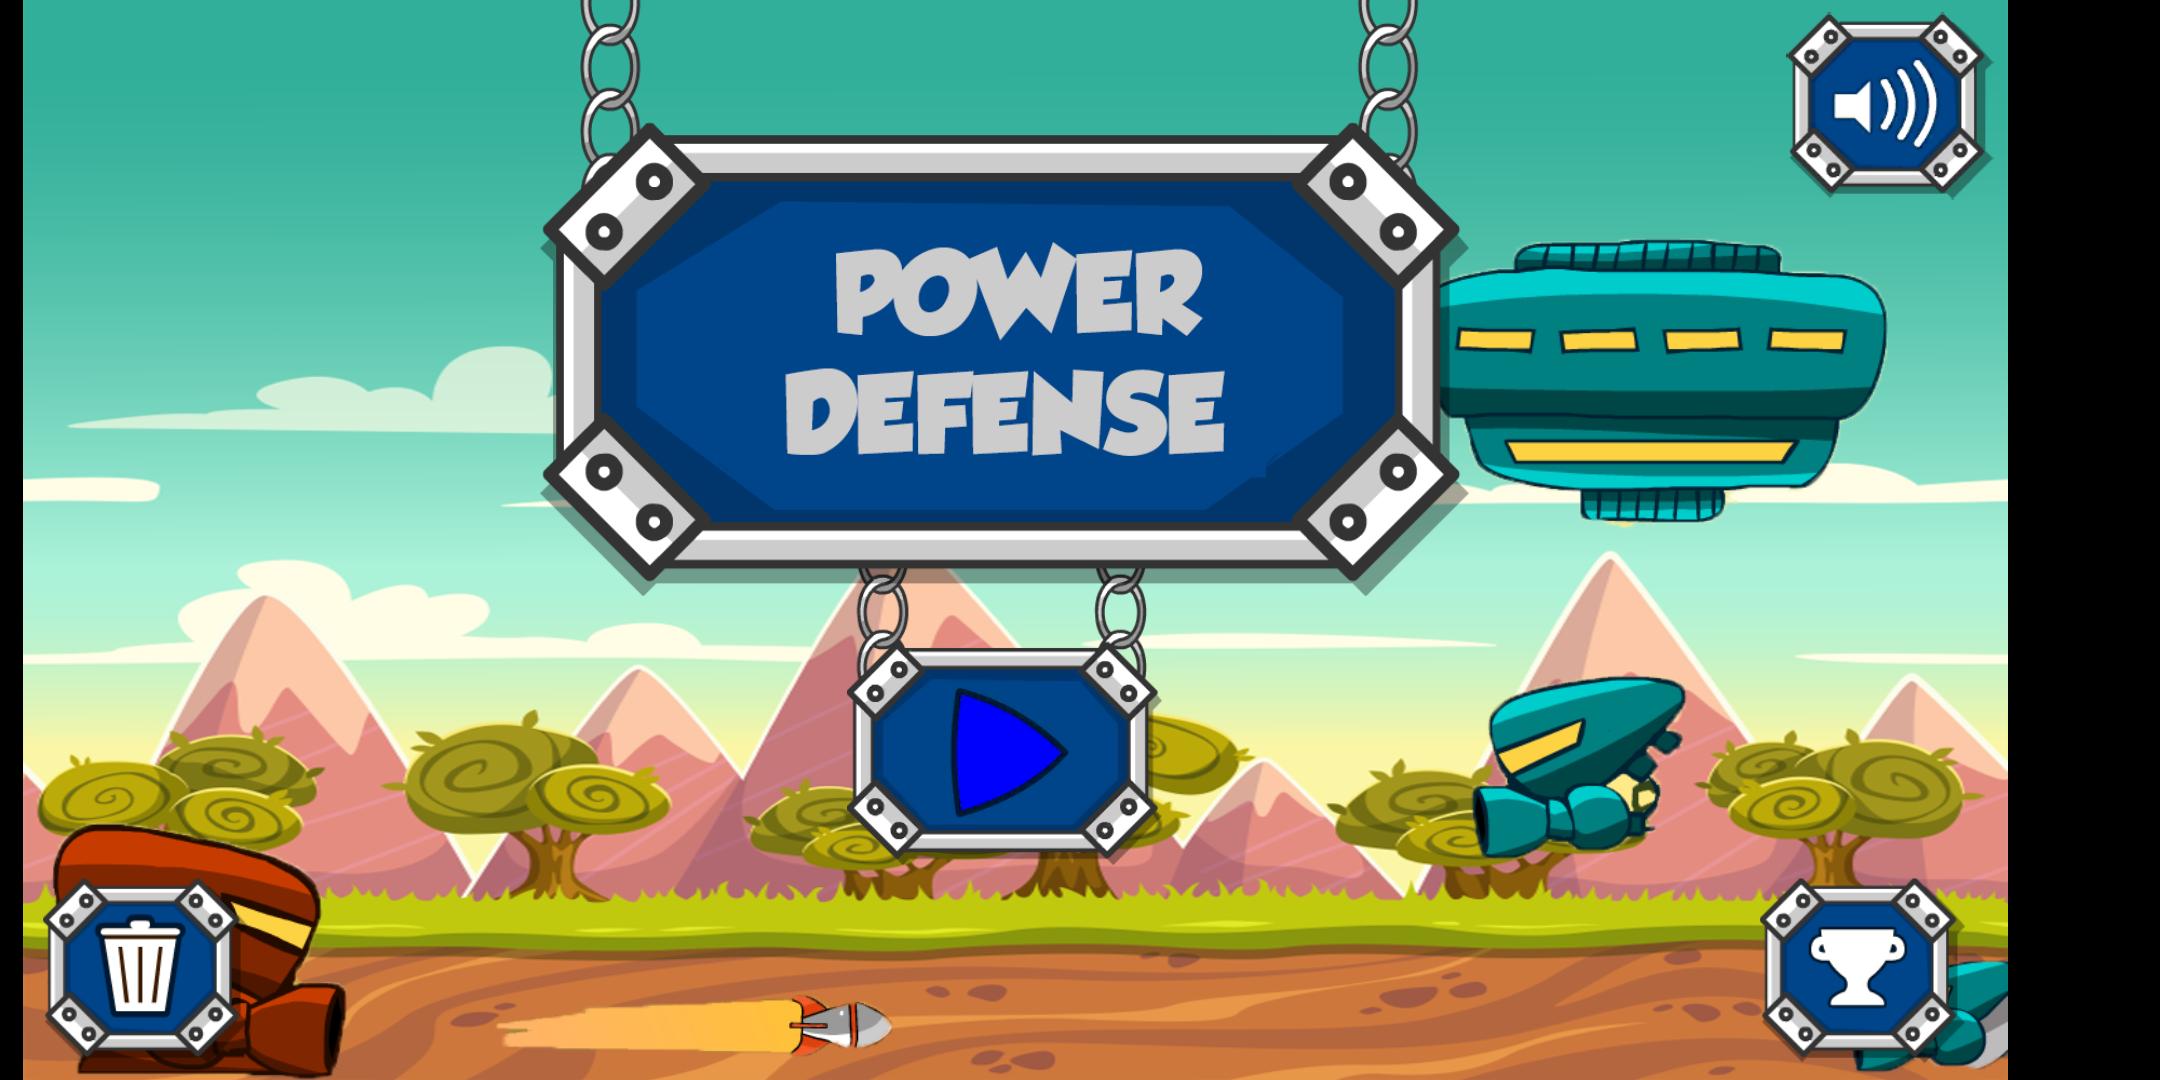 Power defense